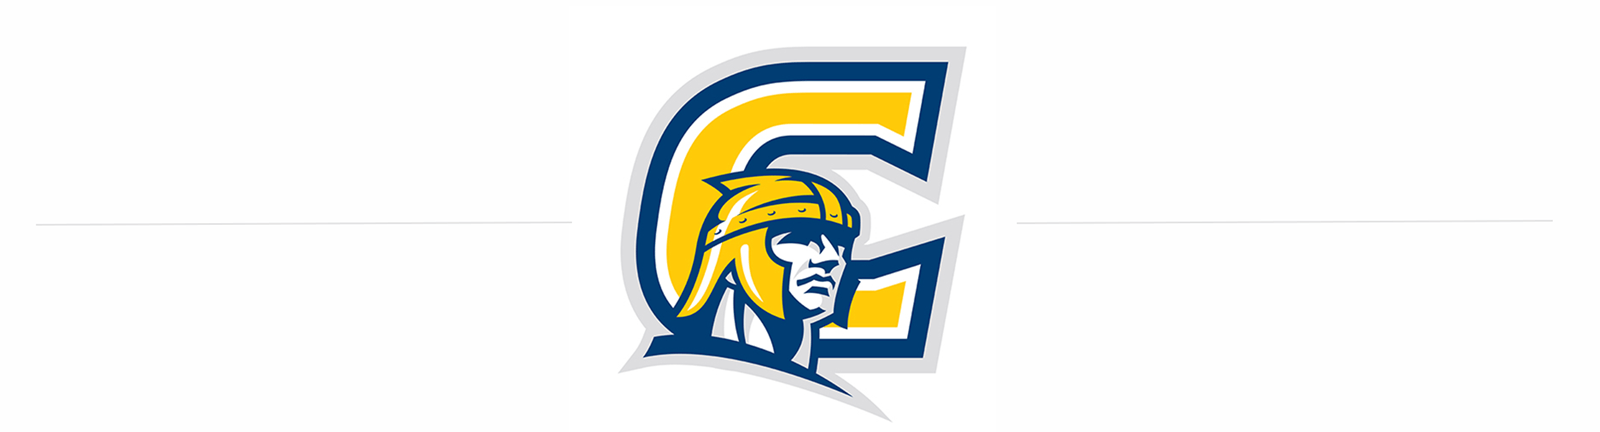 Corban Logo - Why Expand University Athletics